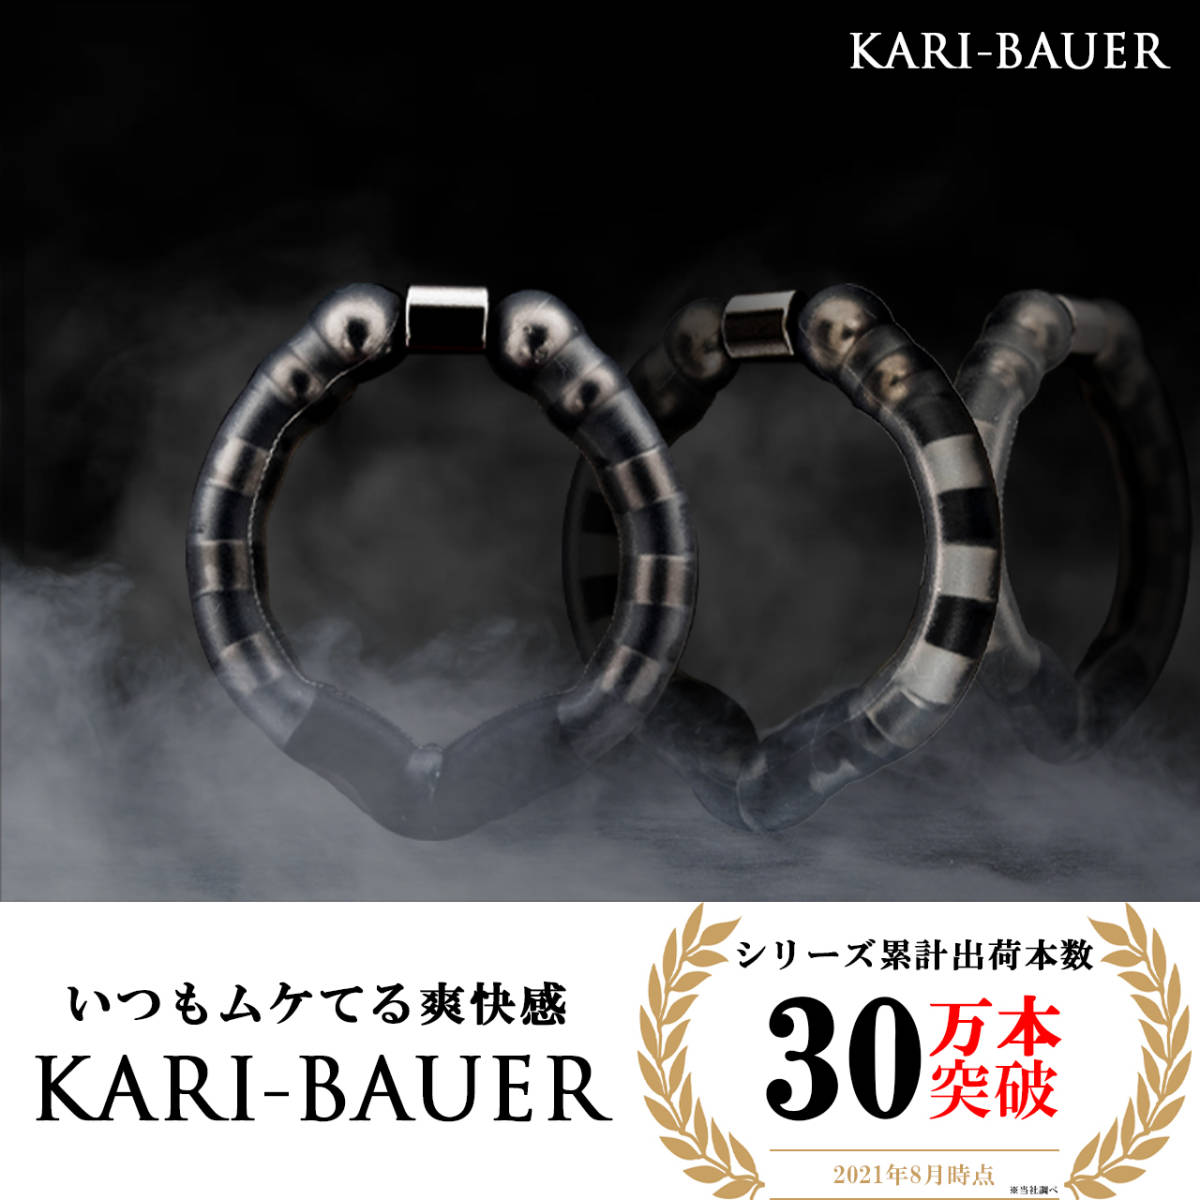 [ новый товар ] временный .. стебель кольцо kali Bauer модель : premium плюс бесплатная доставка KARI-BAUER